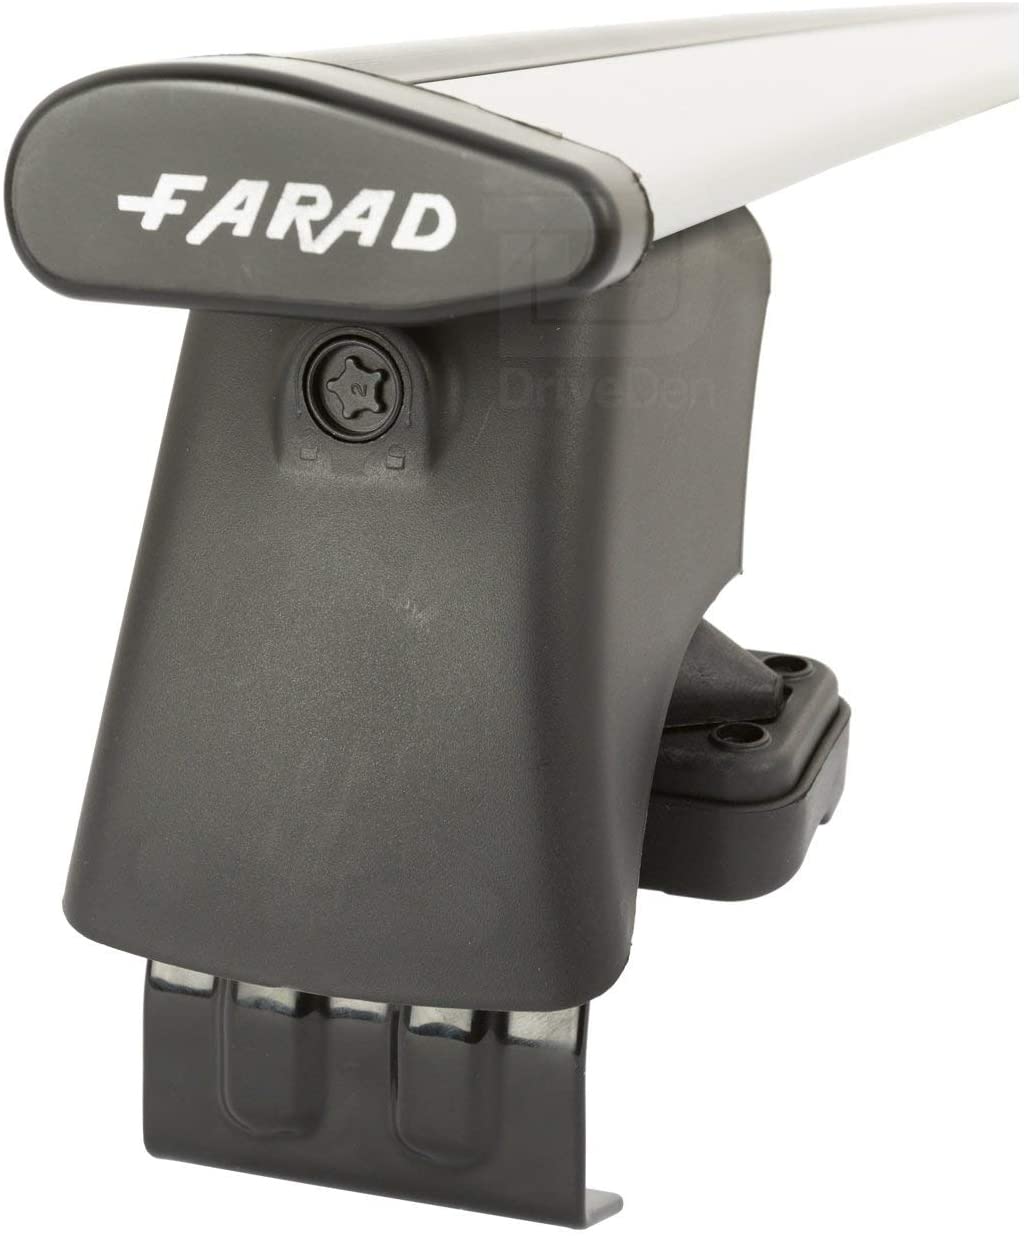 FARAD-Kit H2 per barre portatutto - Fiat Bravo 2007-2014 (senza corrimano)